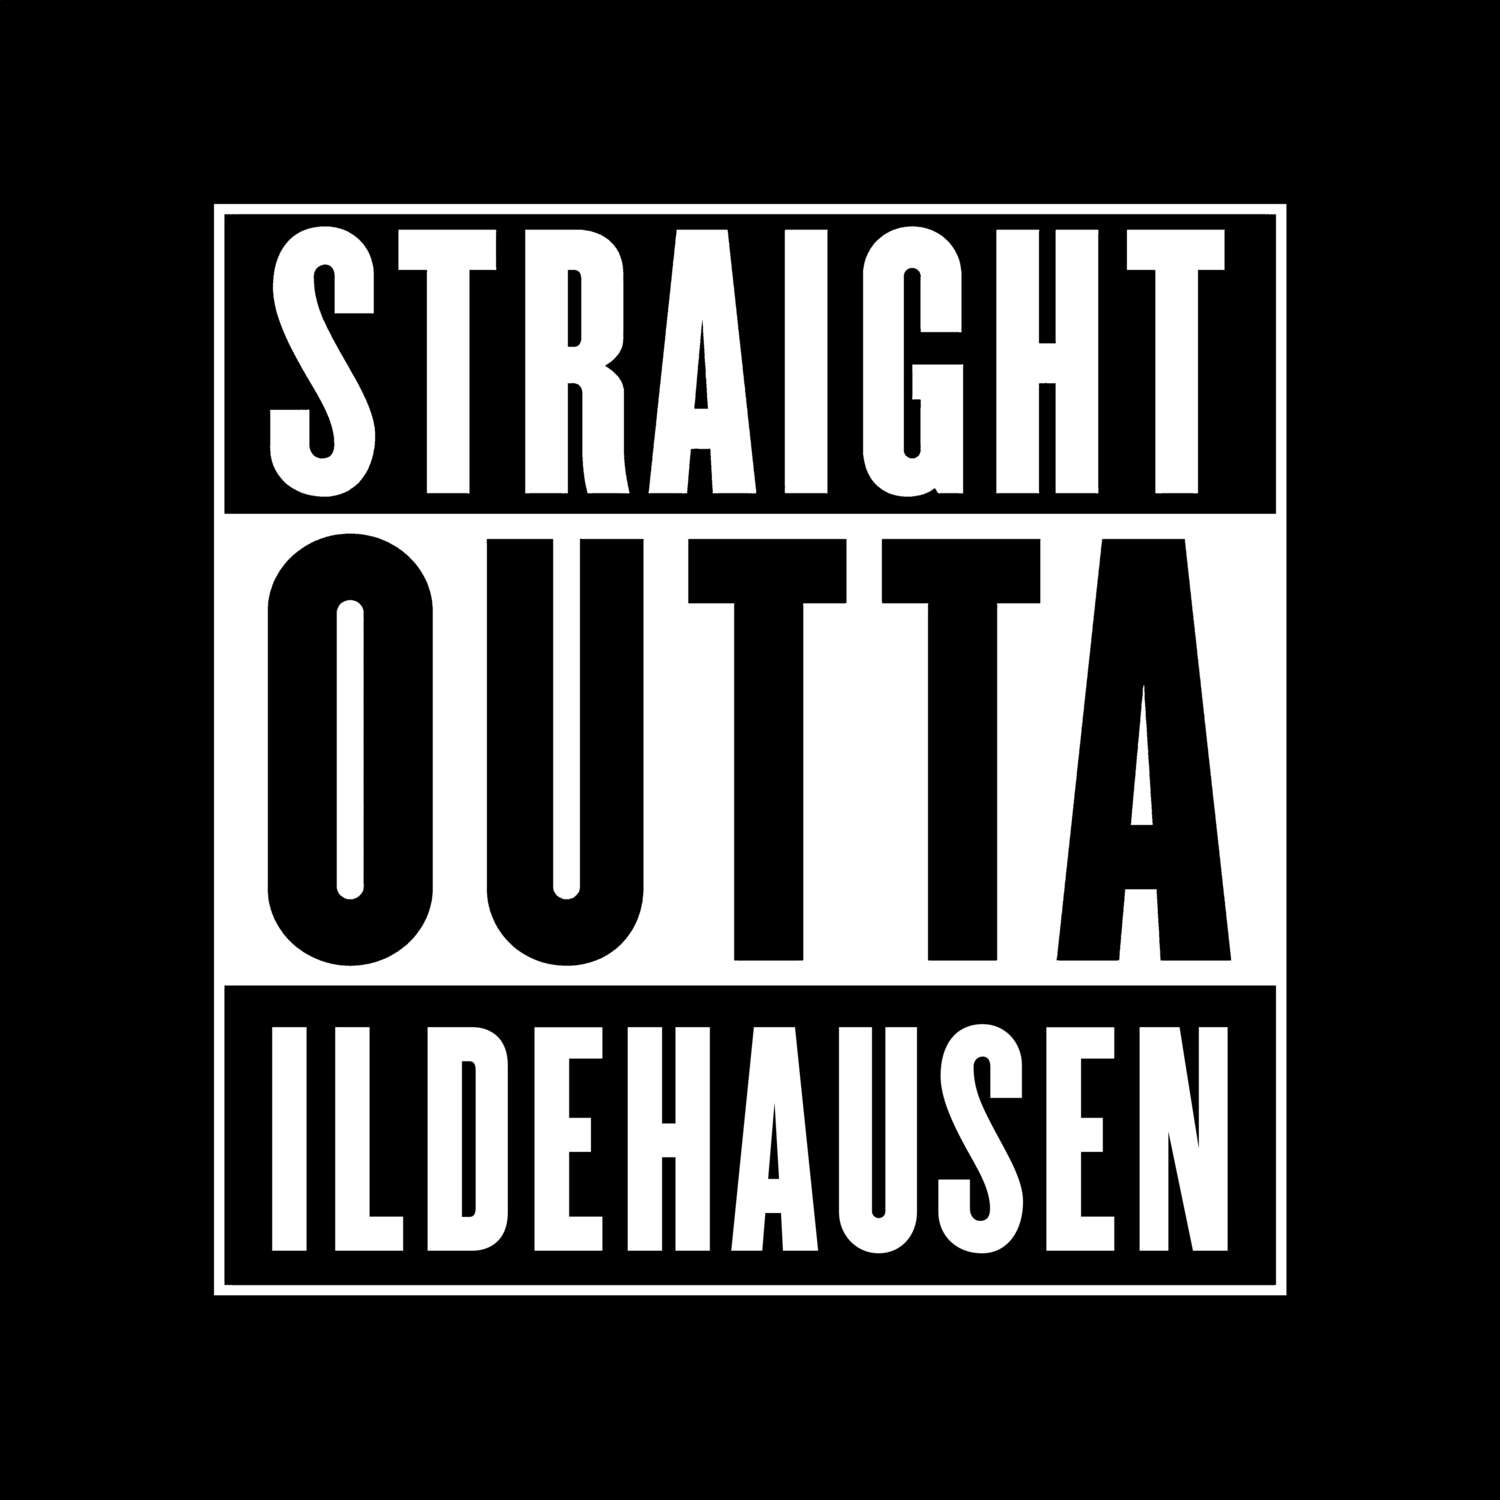 Ildehausen T-Shirt »Straight Outta«